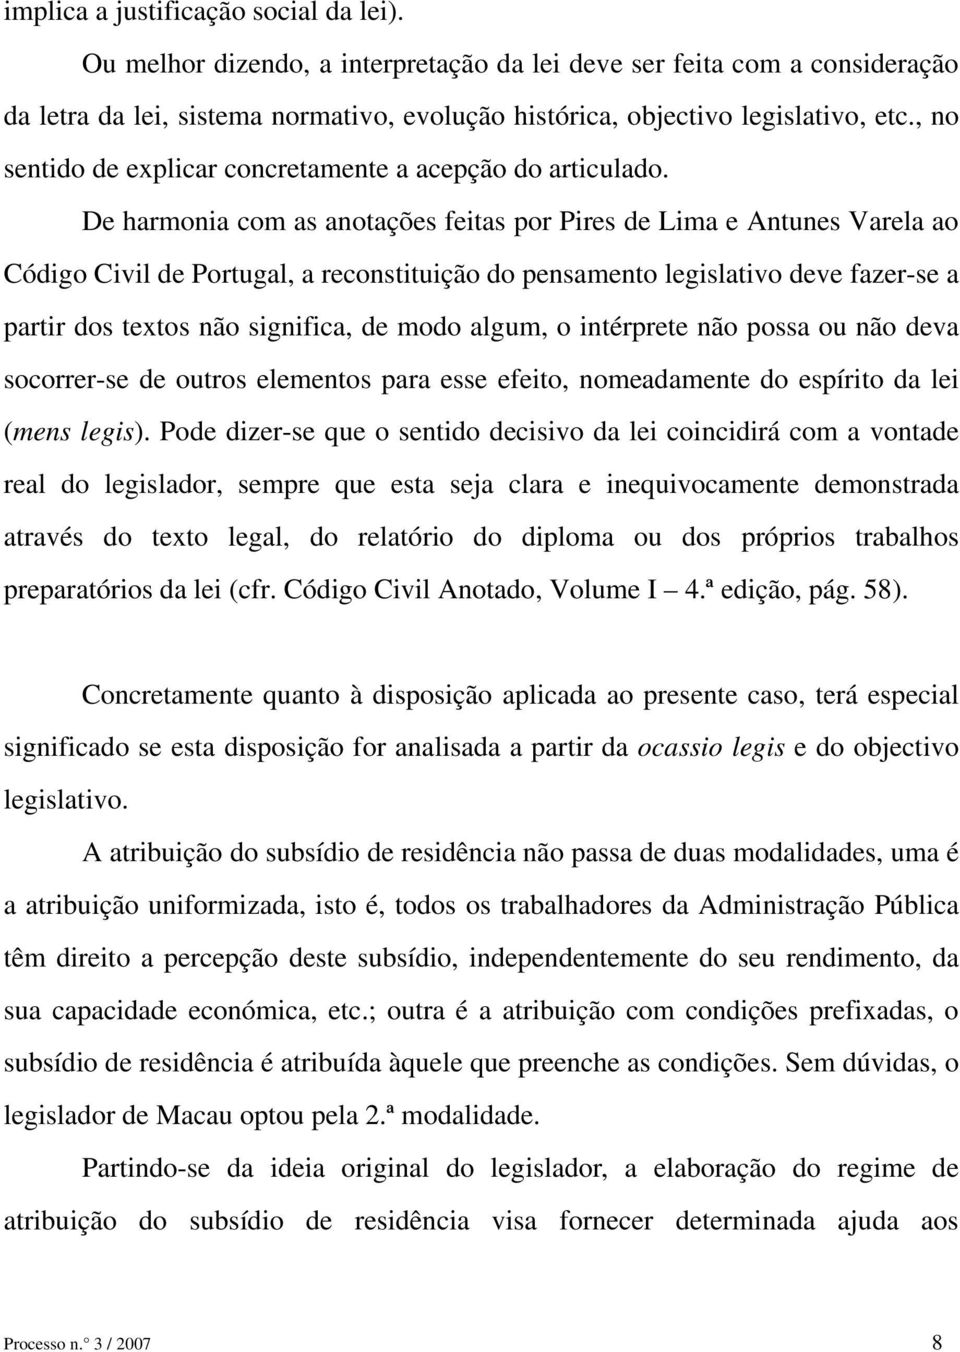 De harmonia com as anotações feitas por Pires de Lima e Antunes Varela ao Código Civil de Portugal, a reconstituição do pensamento legislativo deve fazer-se a partir dos textos não significa, de modo